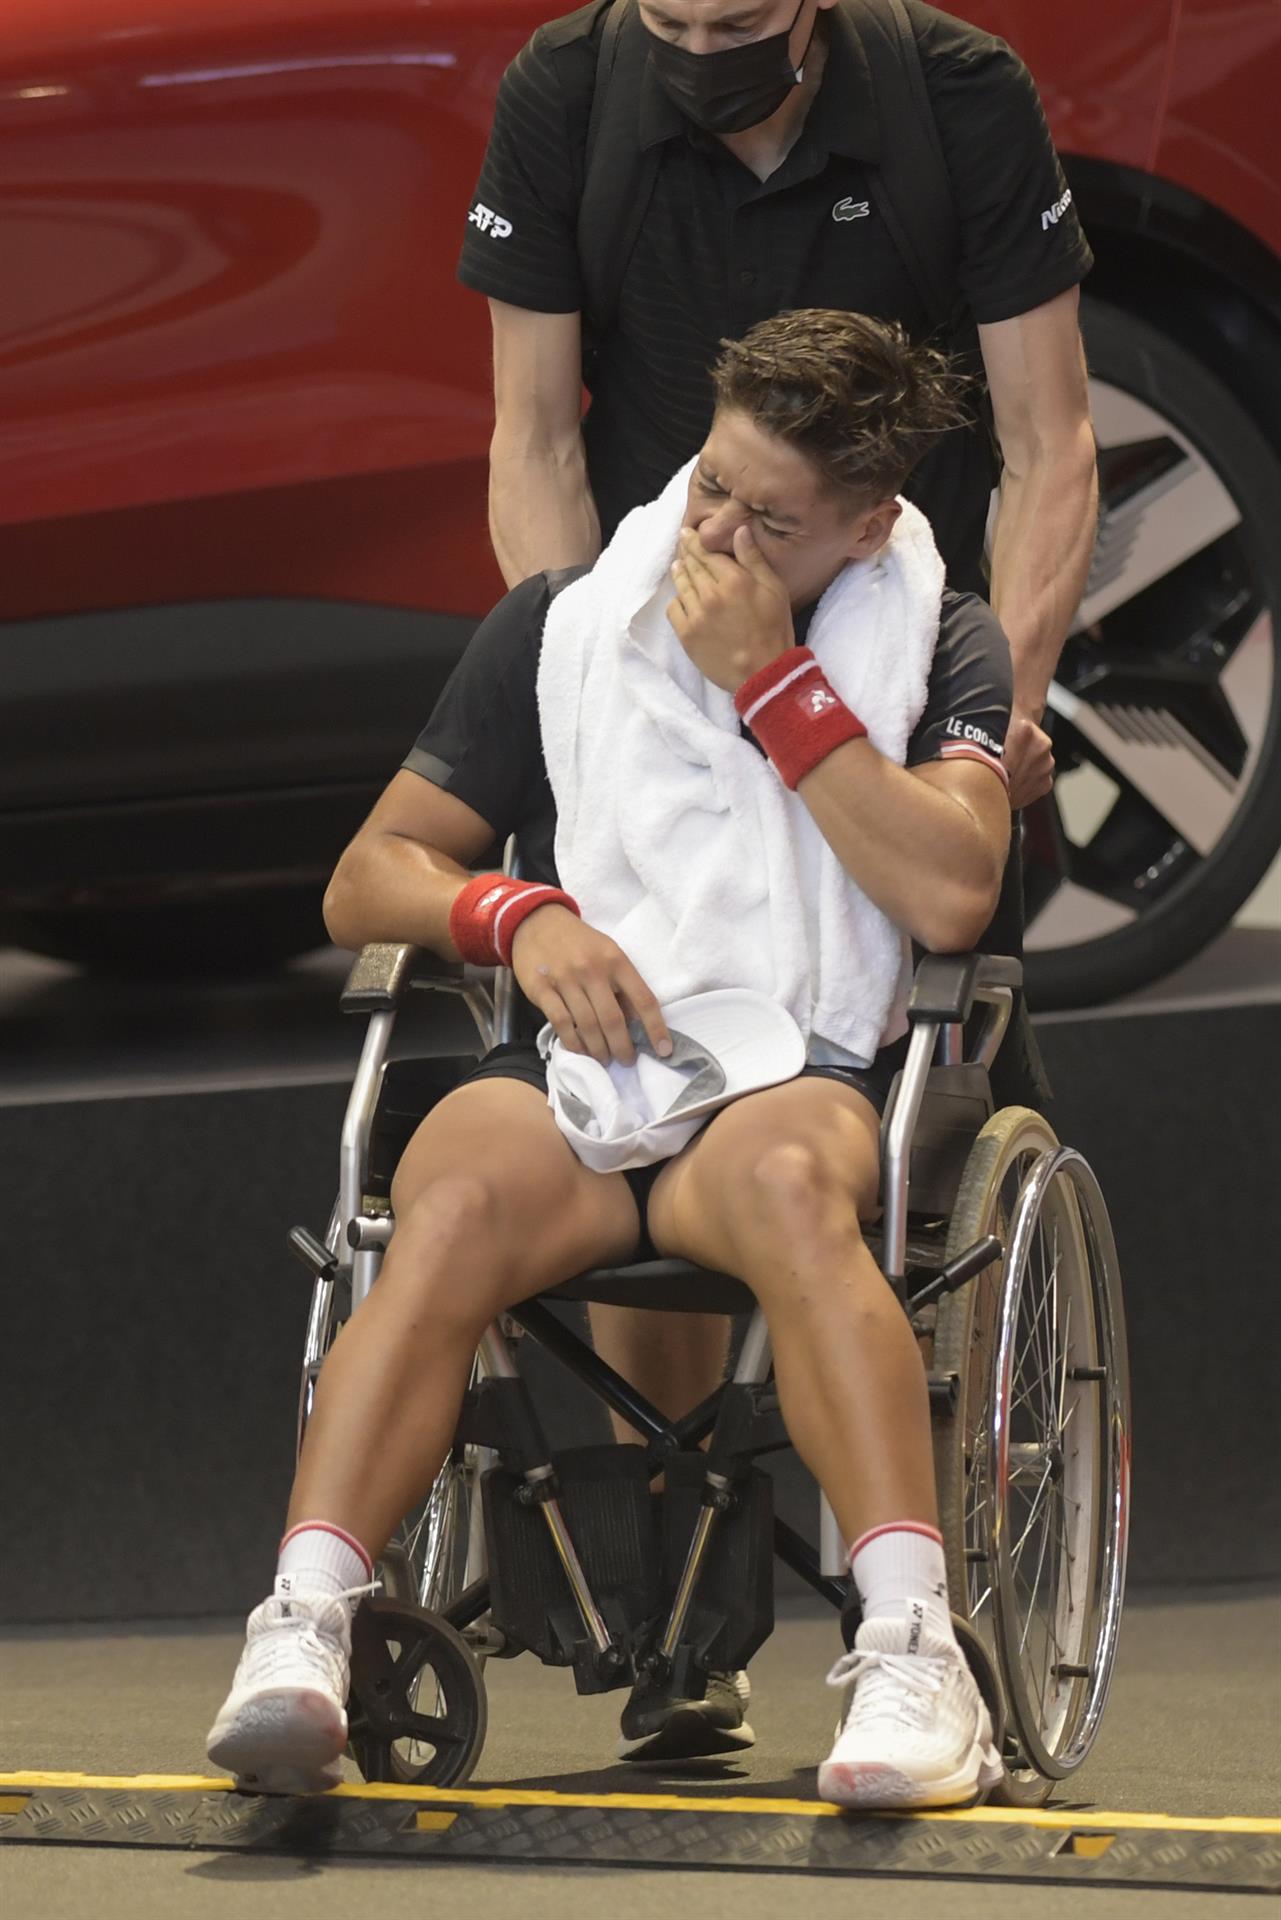 El argentino Sebastián Báez se lesionó en la rodilla derecha durante el partido contra el francés Constant Lestienne en la primera ronda del cuadro final del Gijón Open ATP 250. EFE/Eloy Alonso